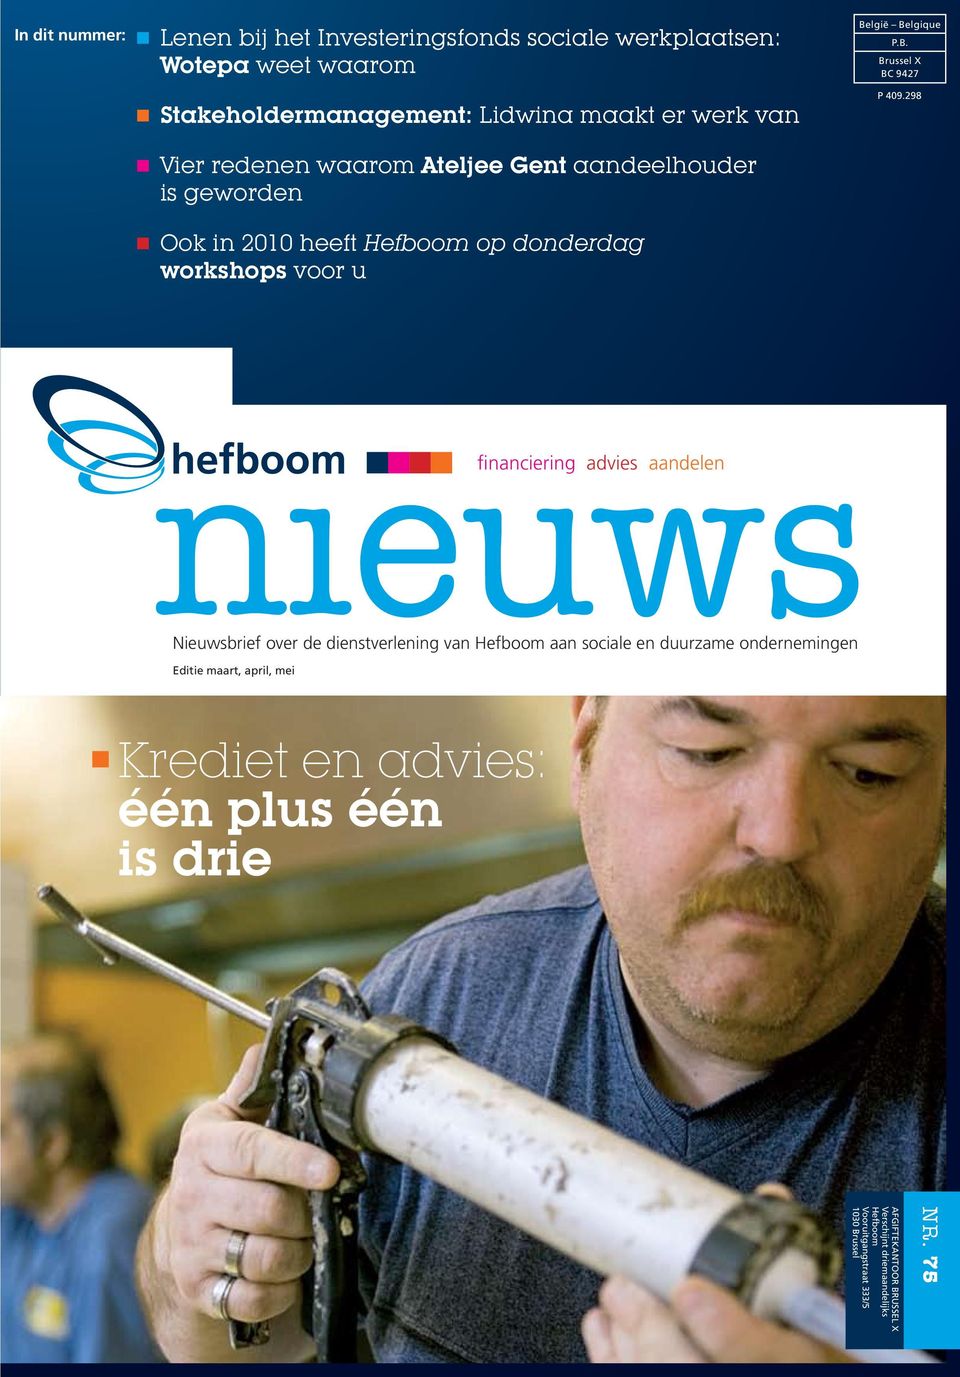 298 Vier redenen waarom Ateljee Gent aandeelhouder is geworden Ook in 2010 heeft Hefboom op donderdag workshops voor u financiering advies